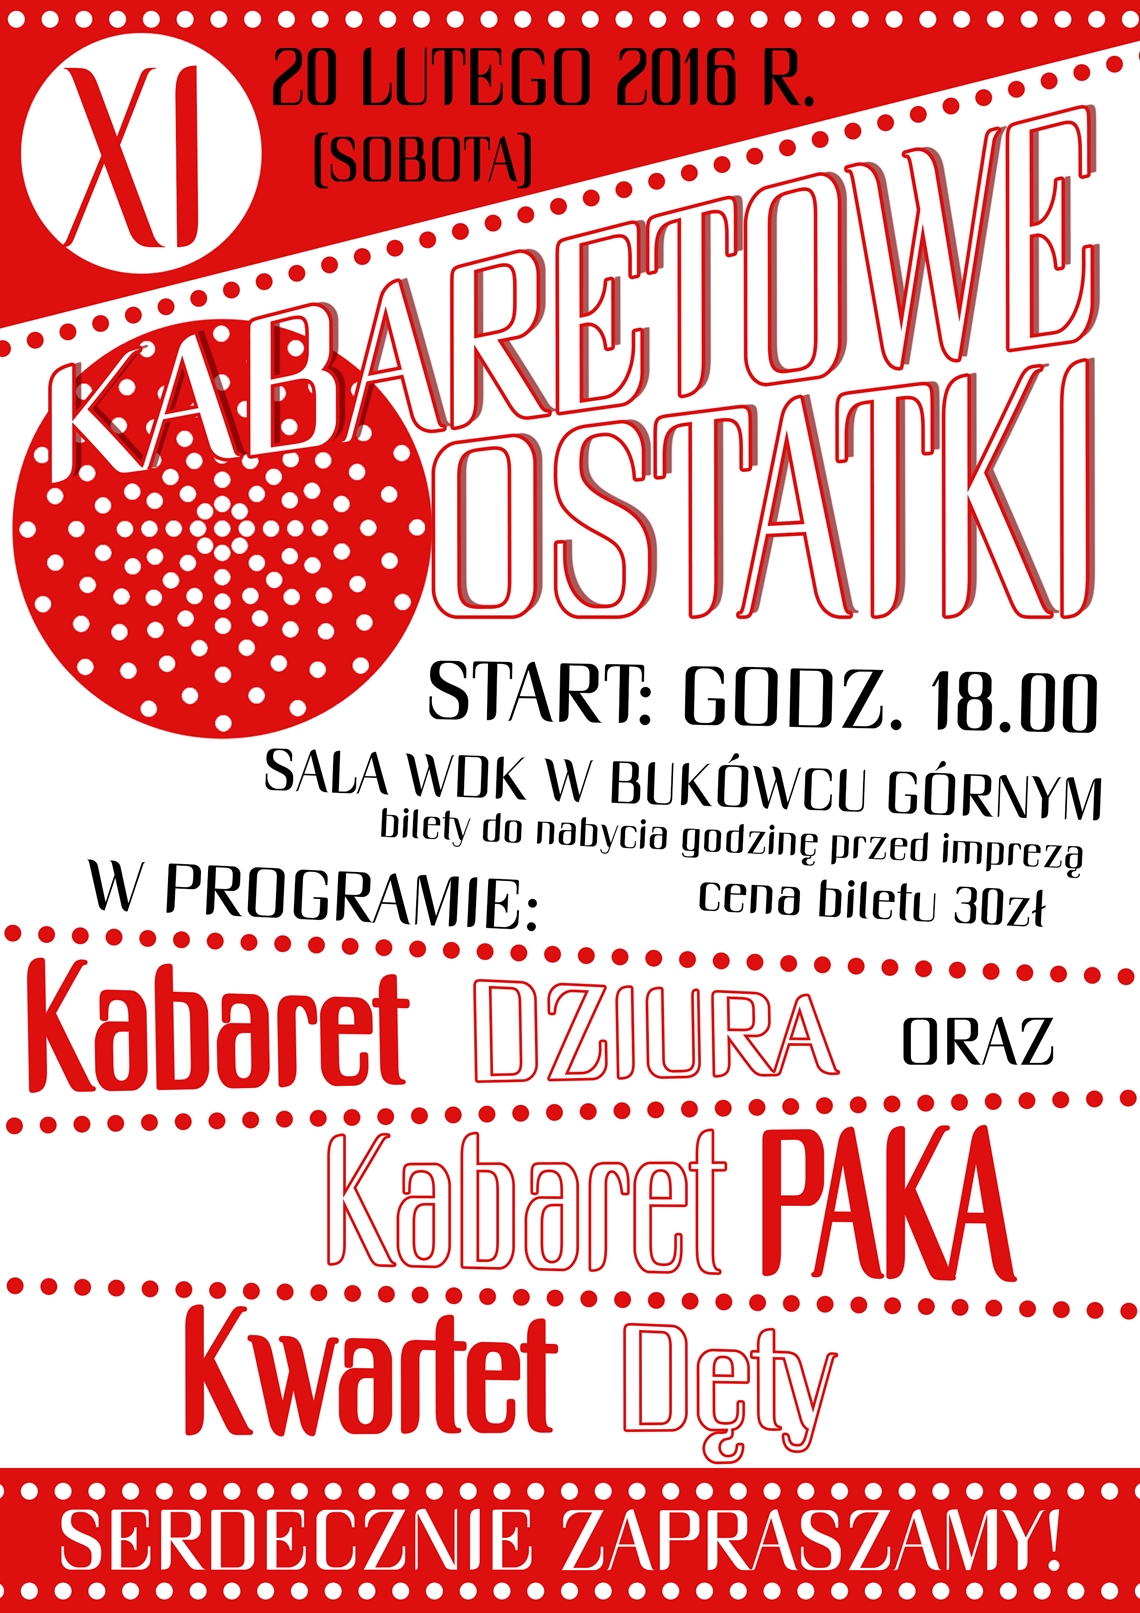 XI Kabaretowe Ostatki 2016 - zaproszenie